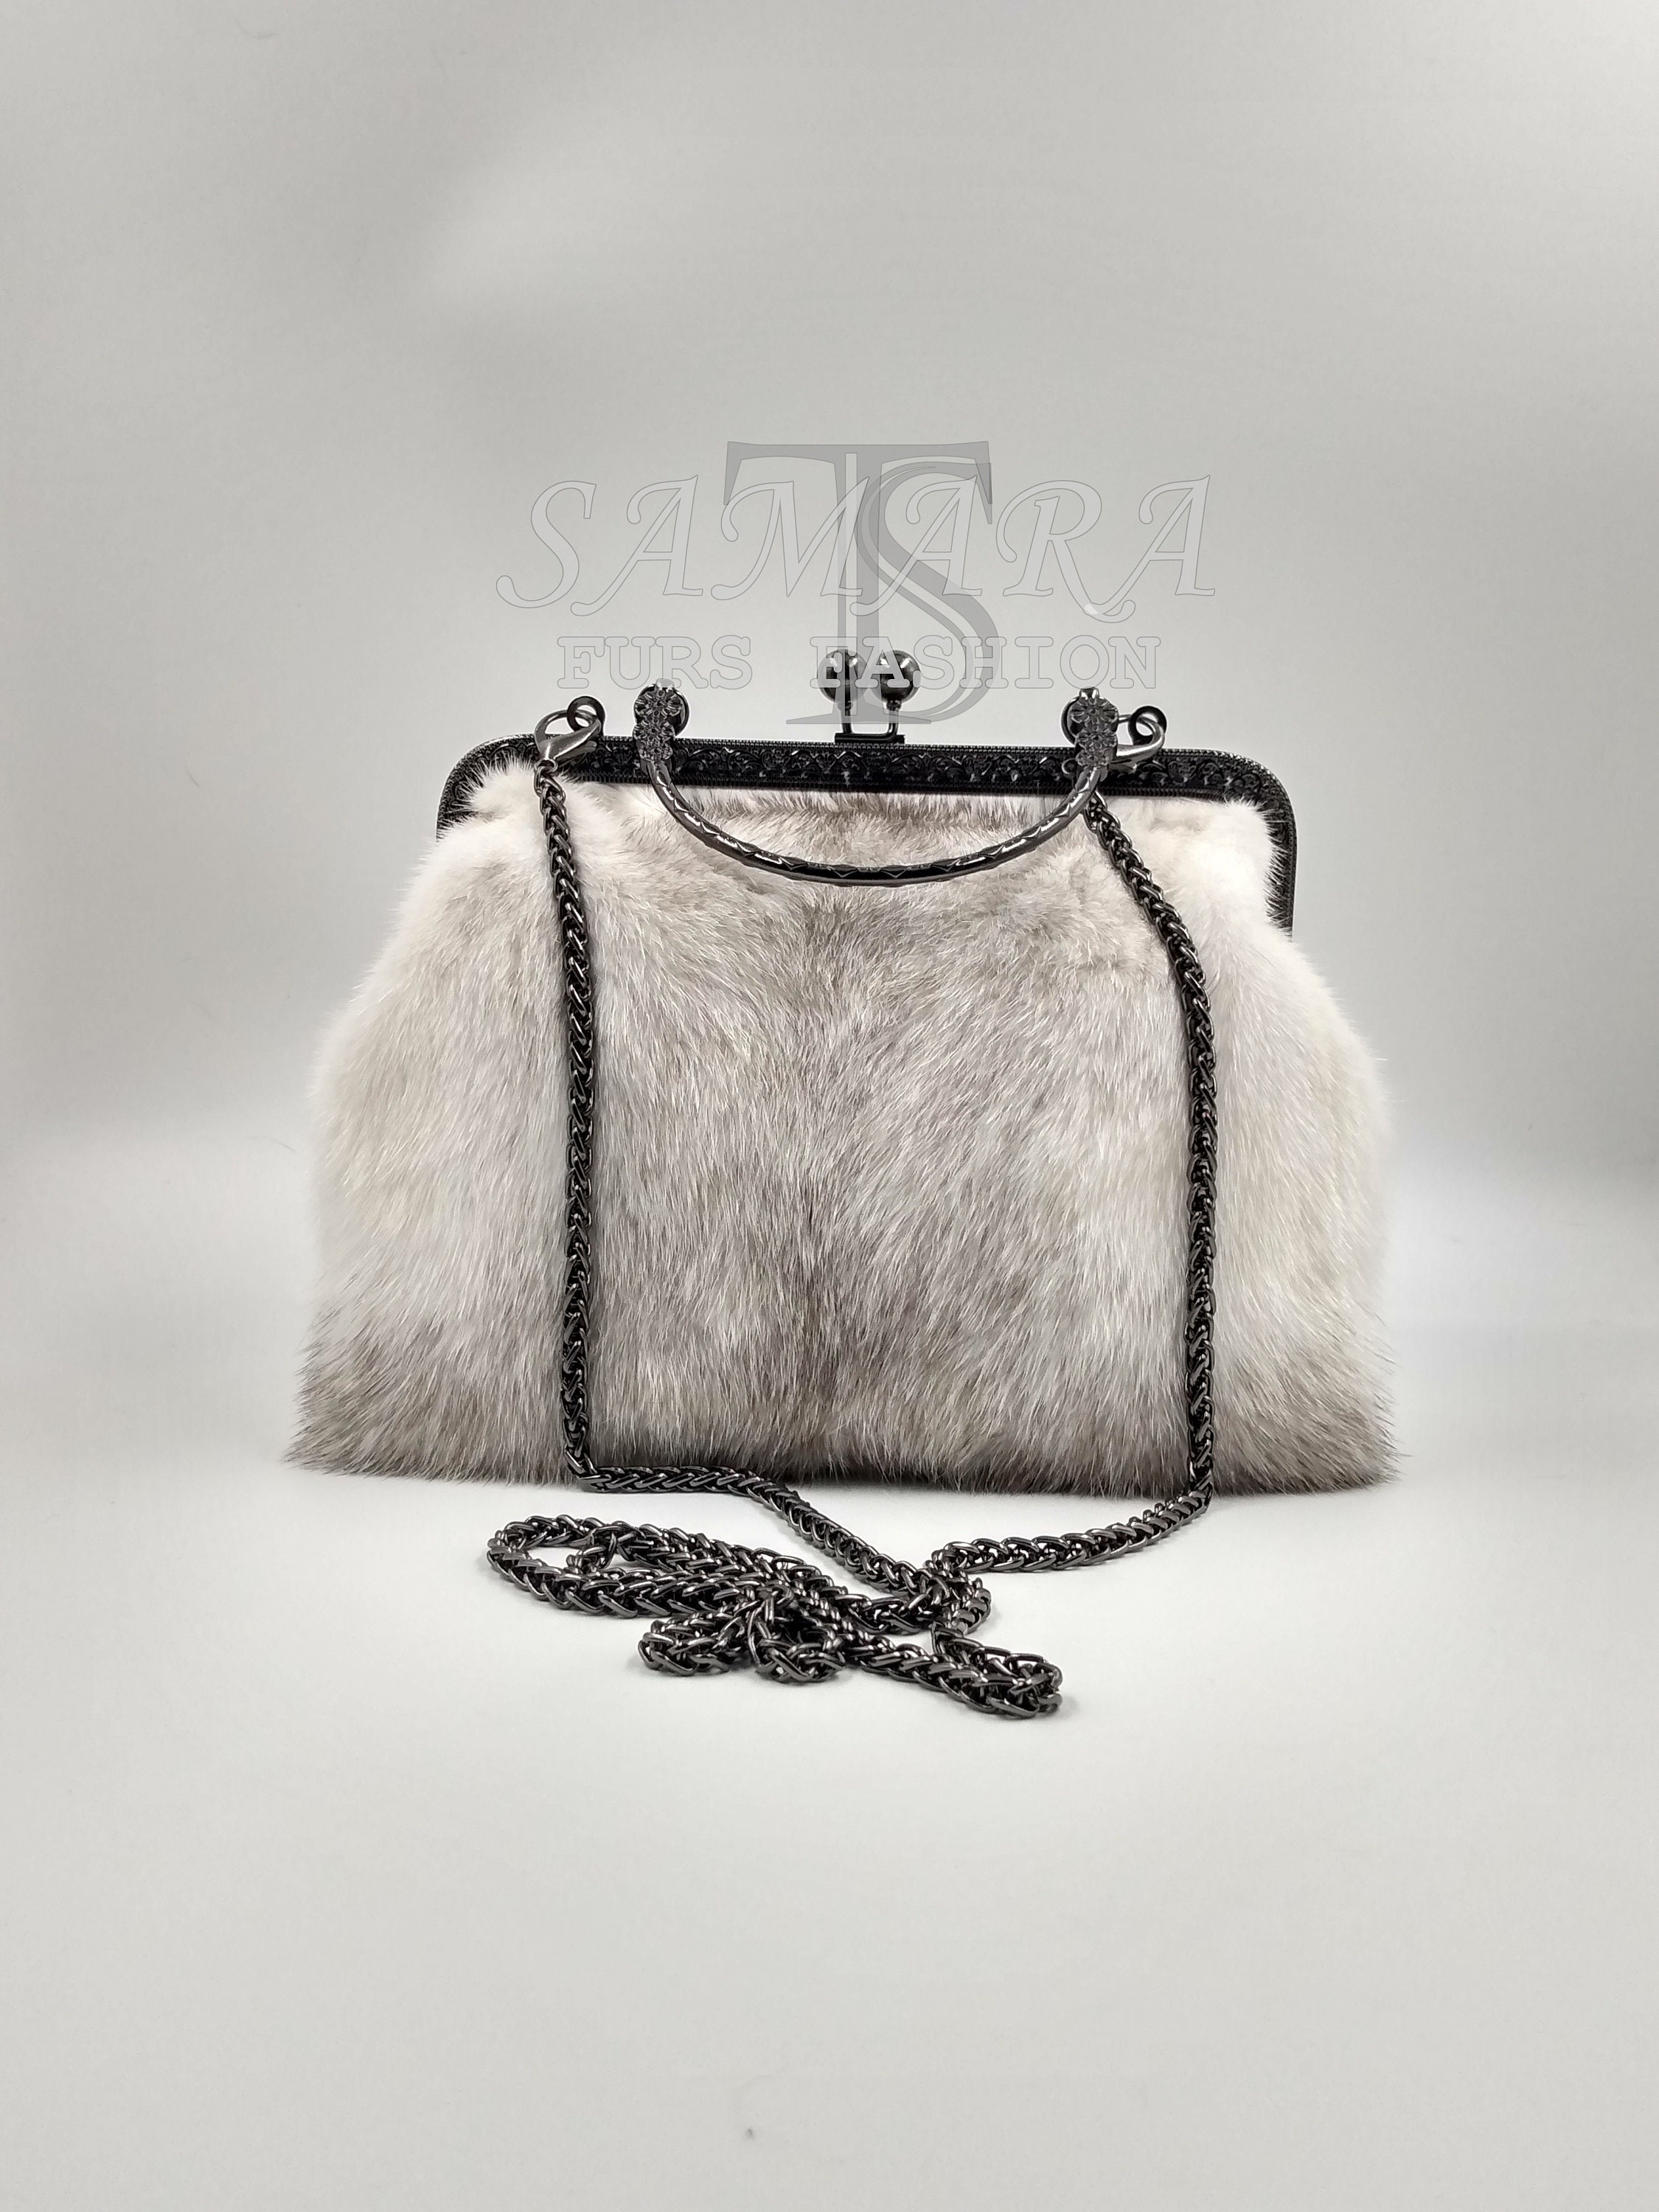 Mink Fur Bag Female Black White Handbag Real Mink Fur Shoulder